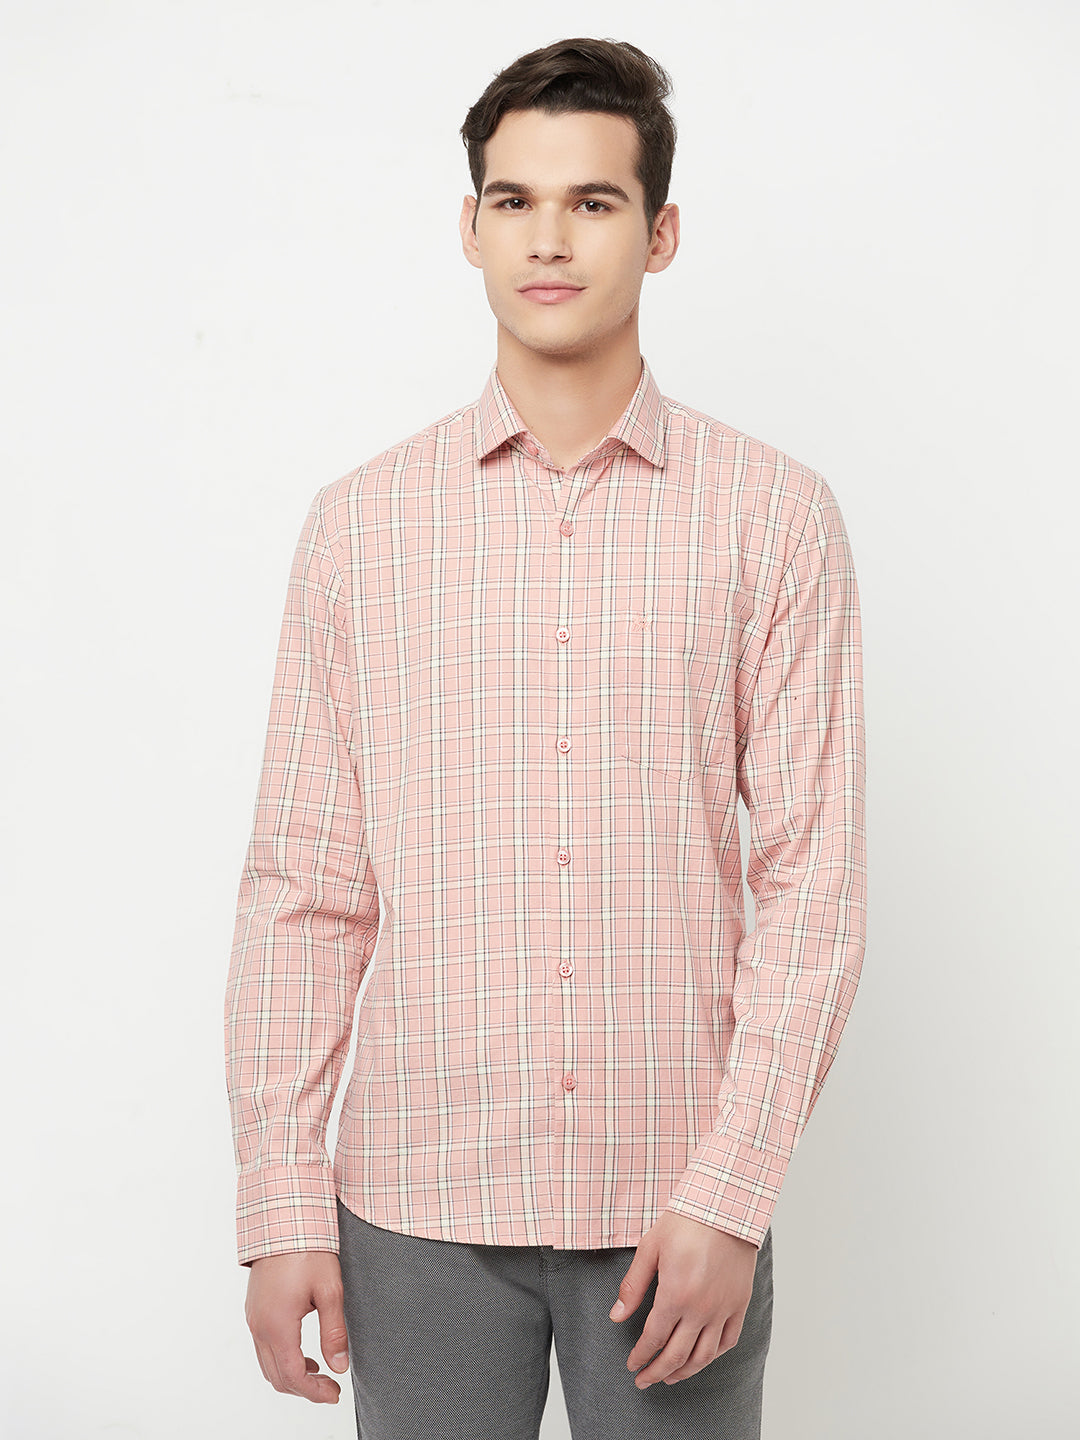 Pink Checked Shirt - Men Shirts